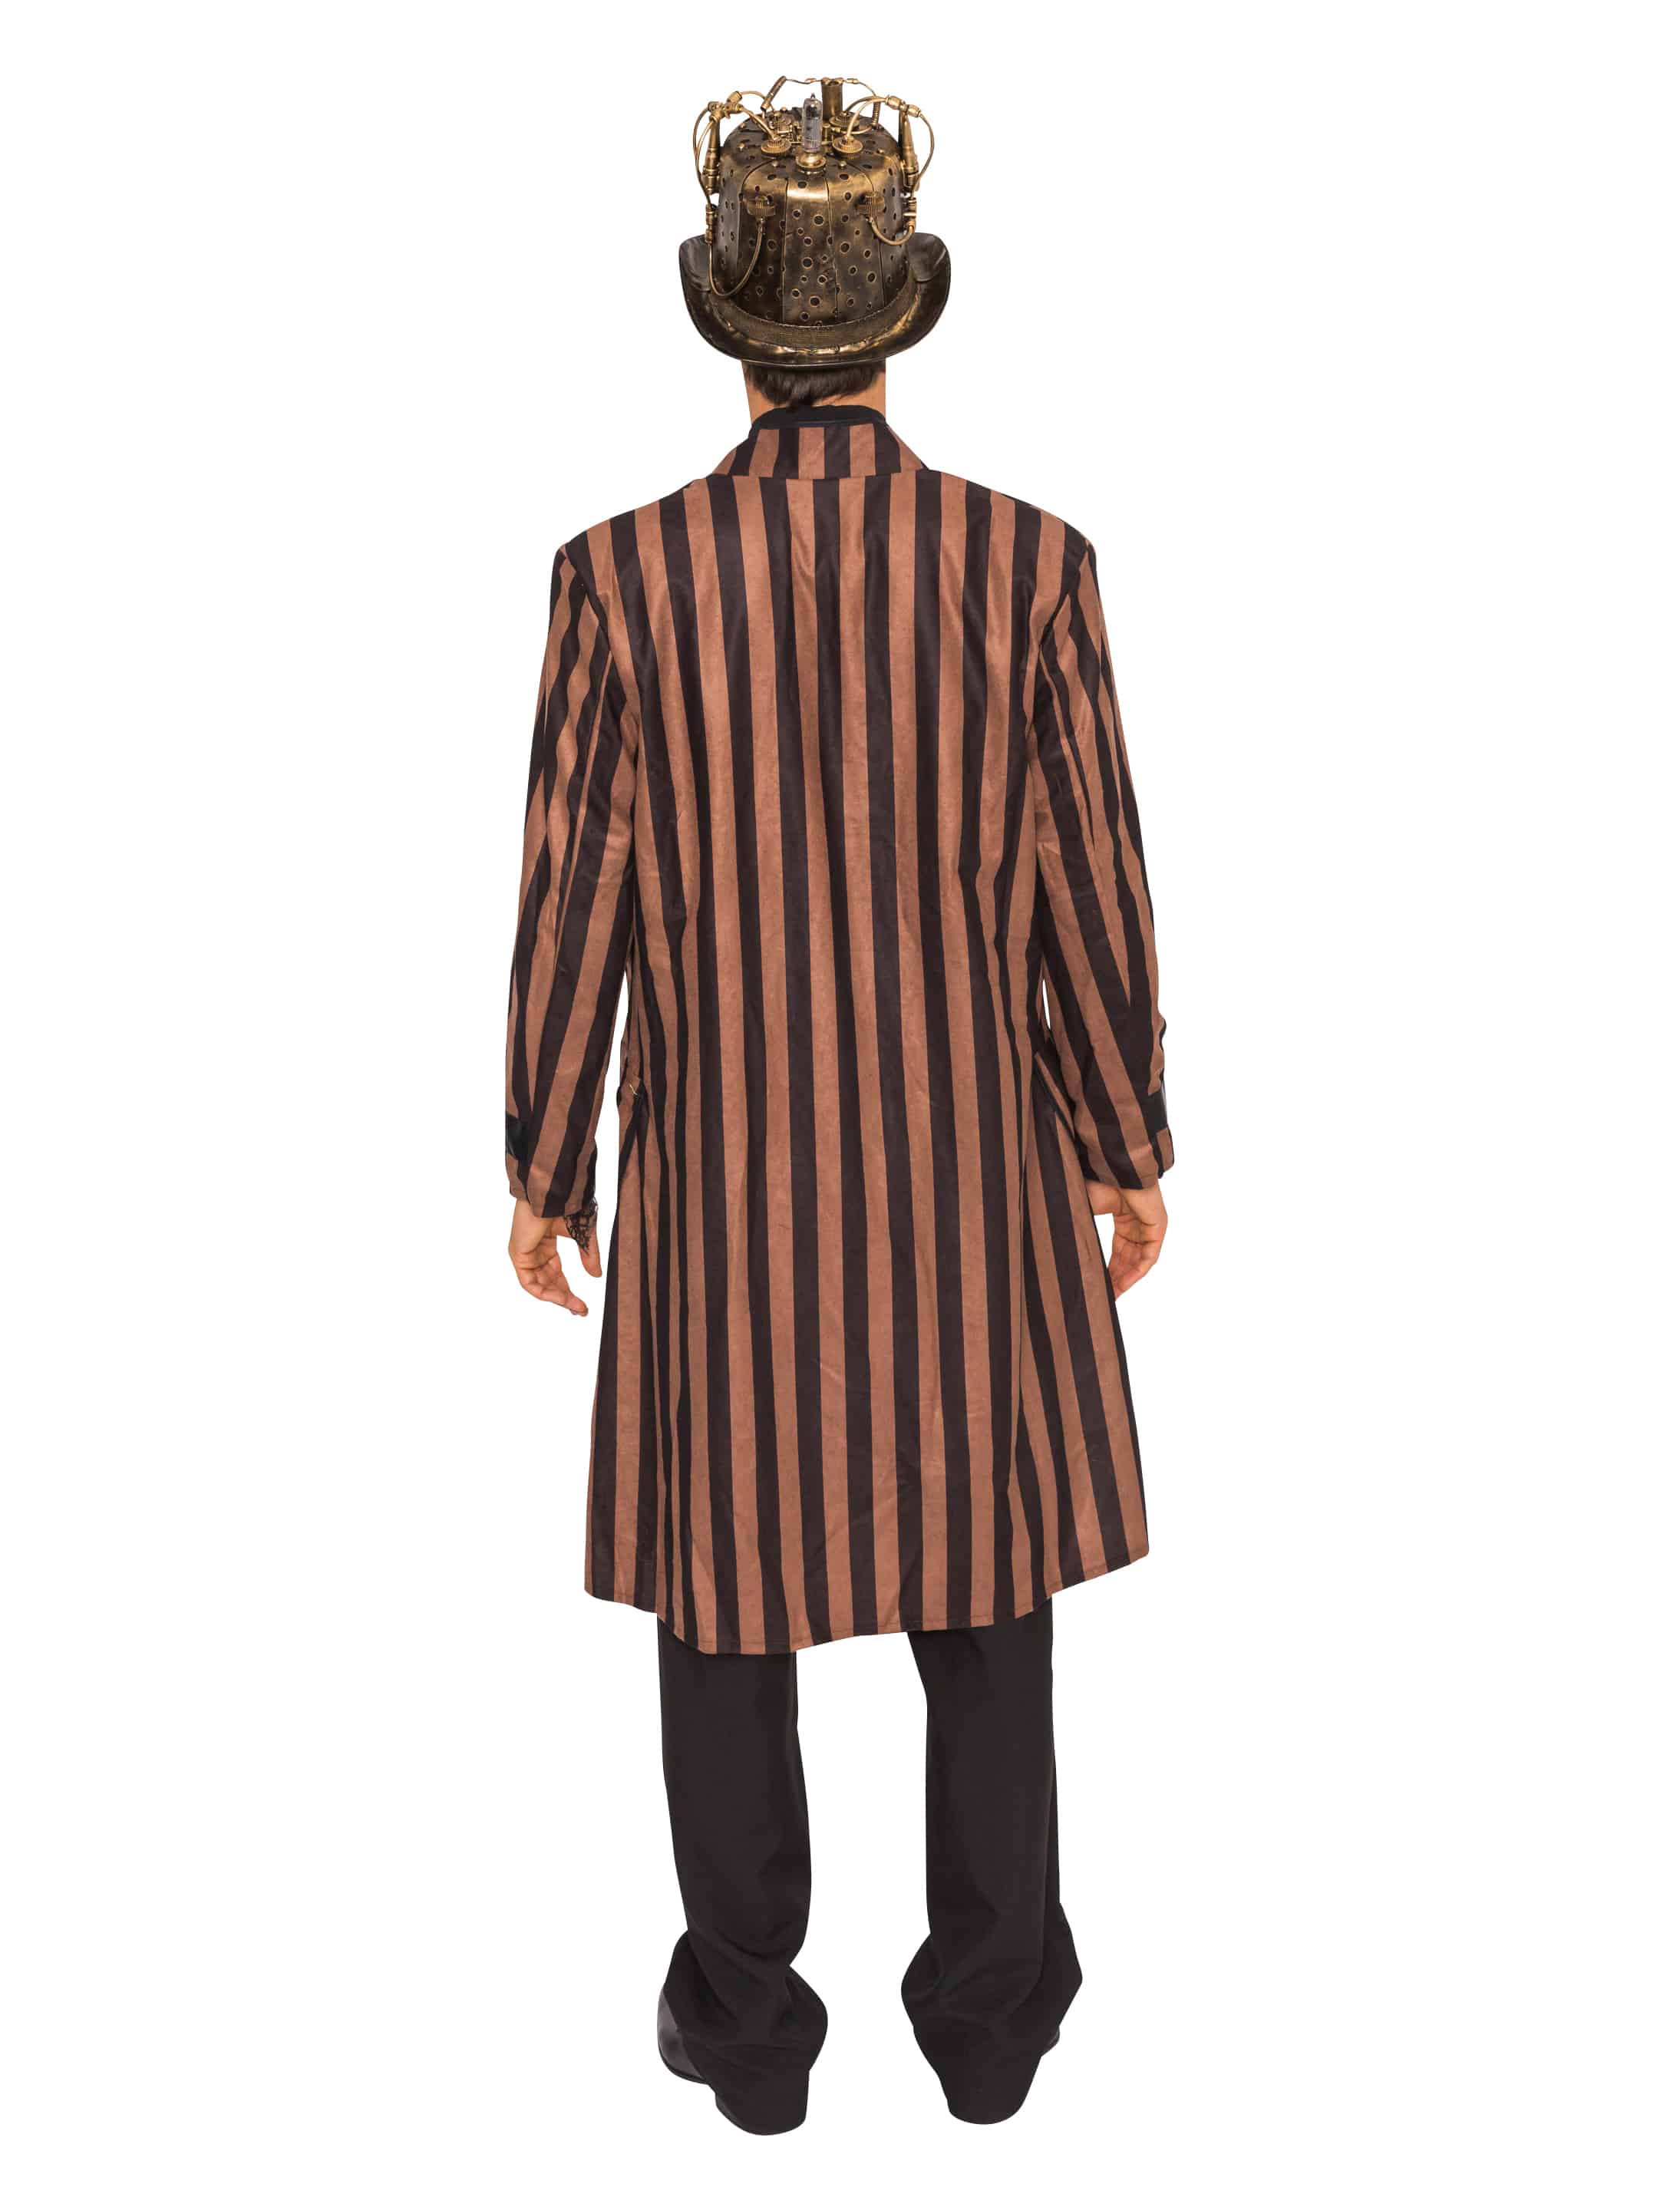 Mantel Steampunk mit Streifen Herren braun/schwarz XS